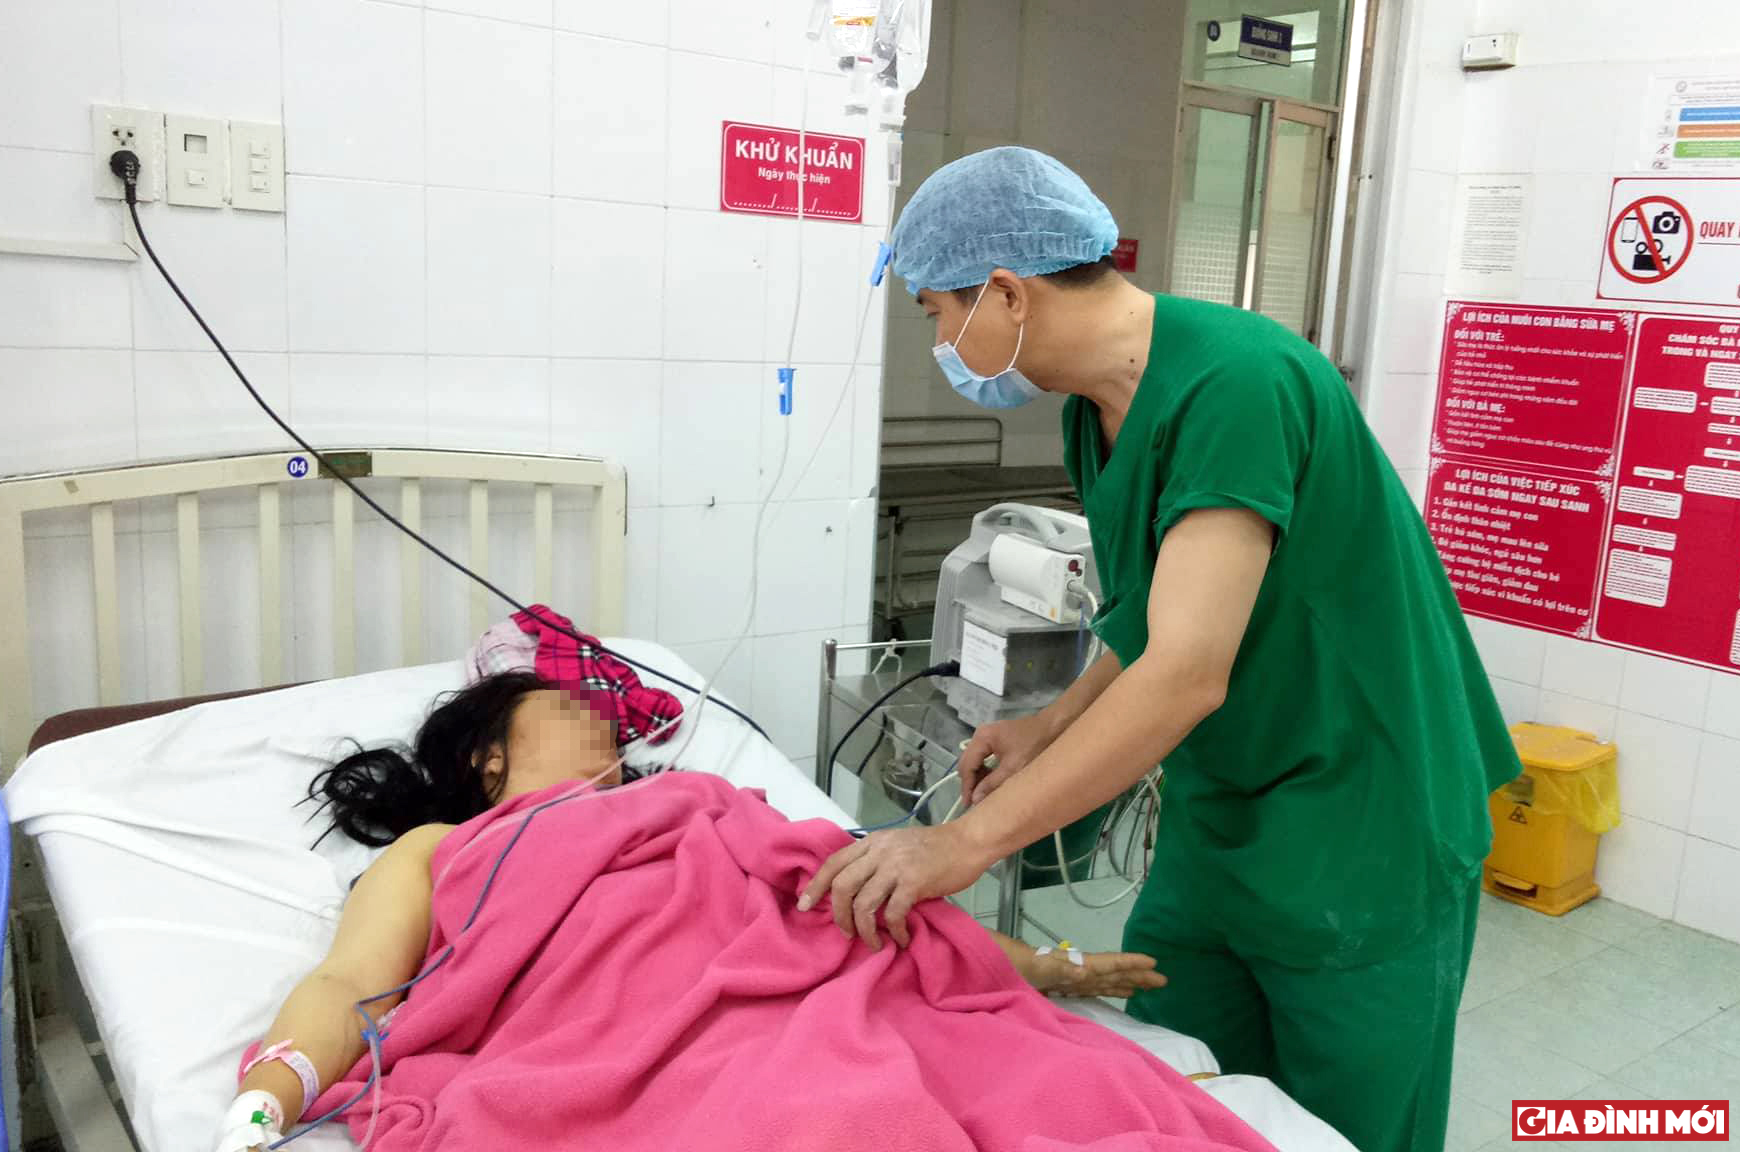 Sản phụ Nguyễn Thị T. mắc hội chứng HELLP nặng được cứu chữa thành công